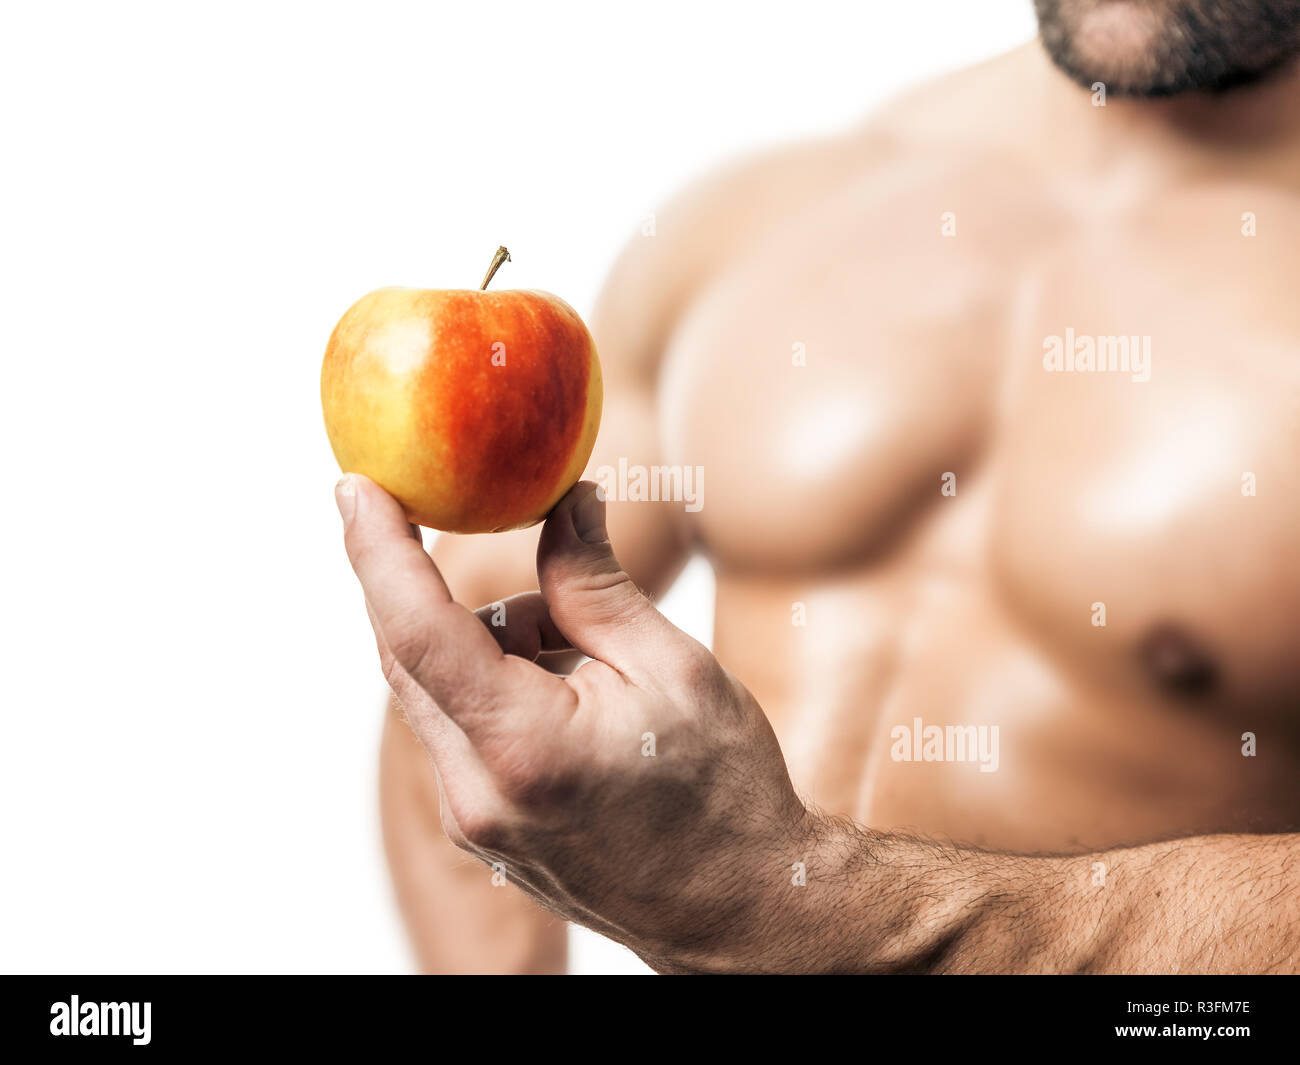 bodybuilder with apple Stock Photo